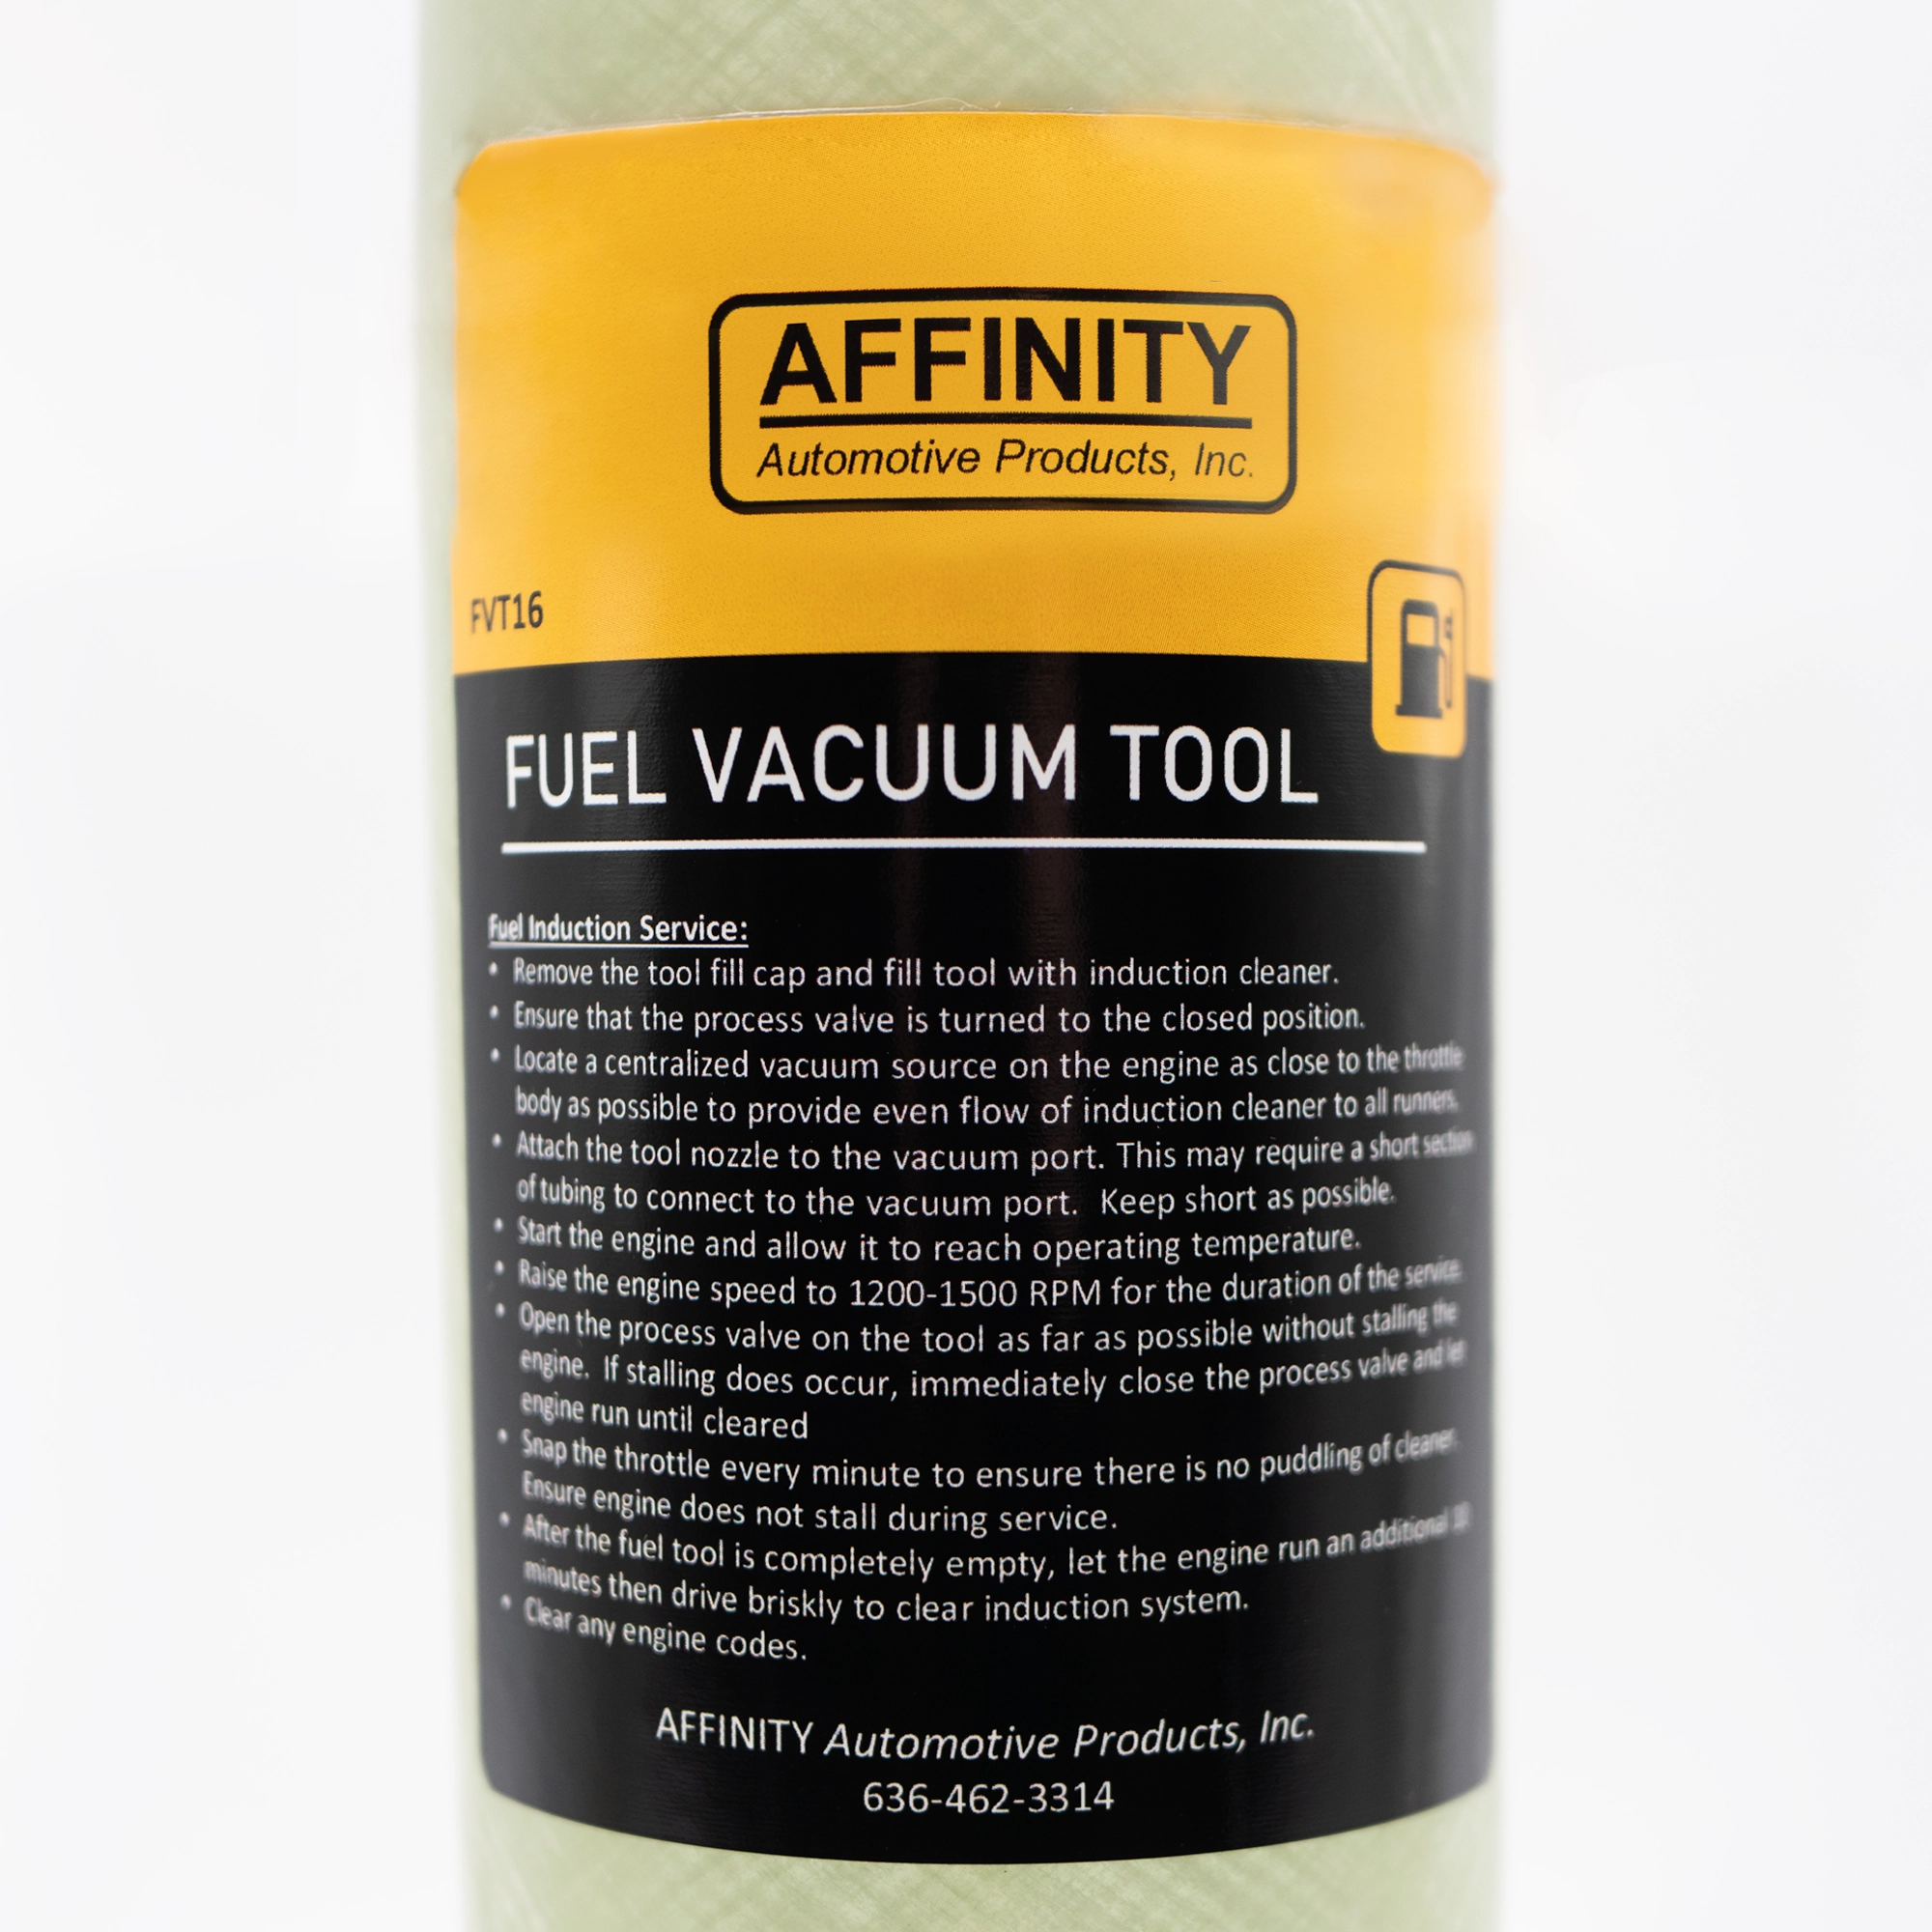 Fuel Vacuum Tool (FVT16)